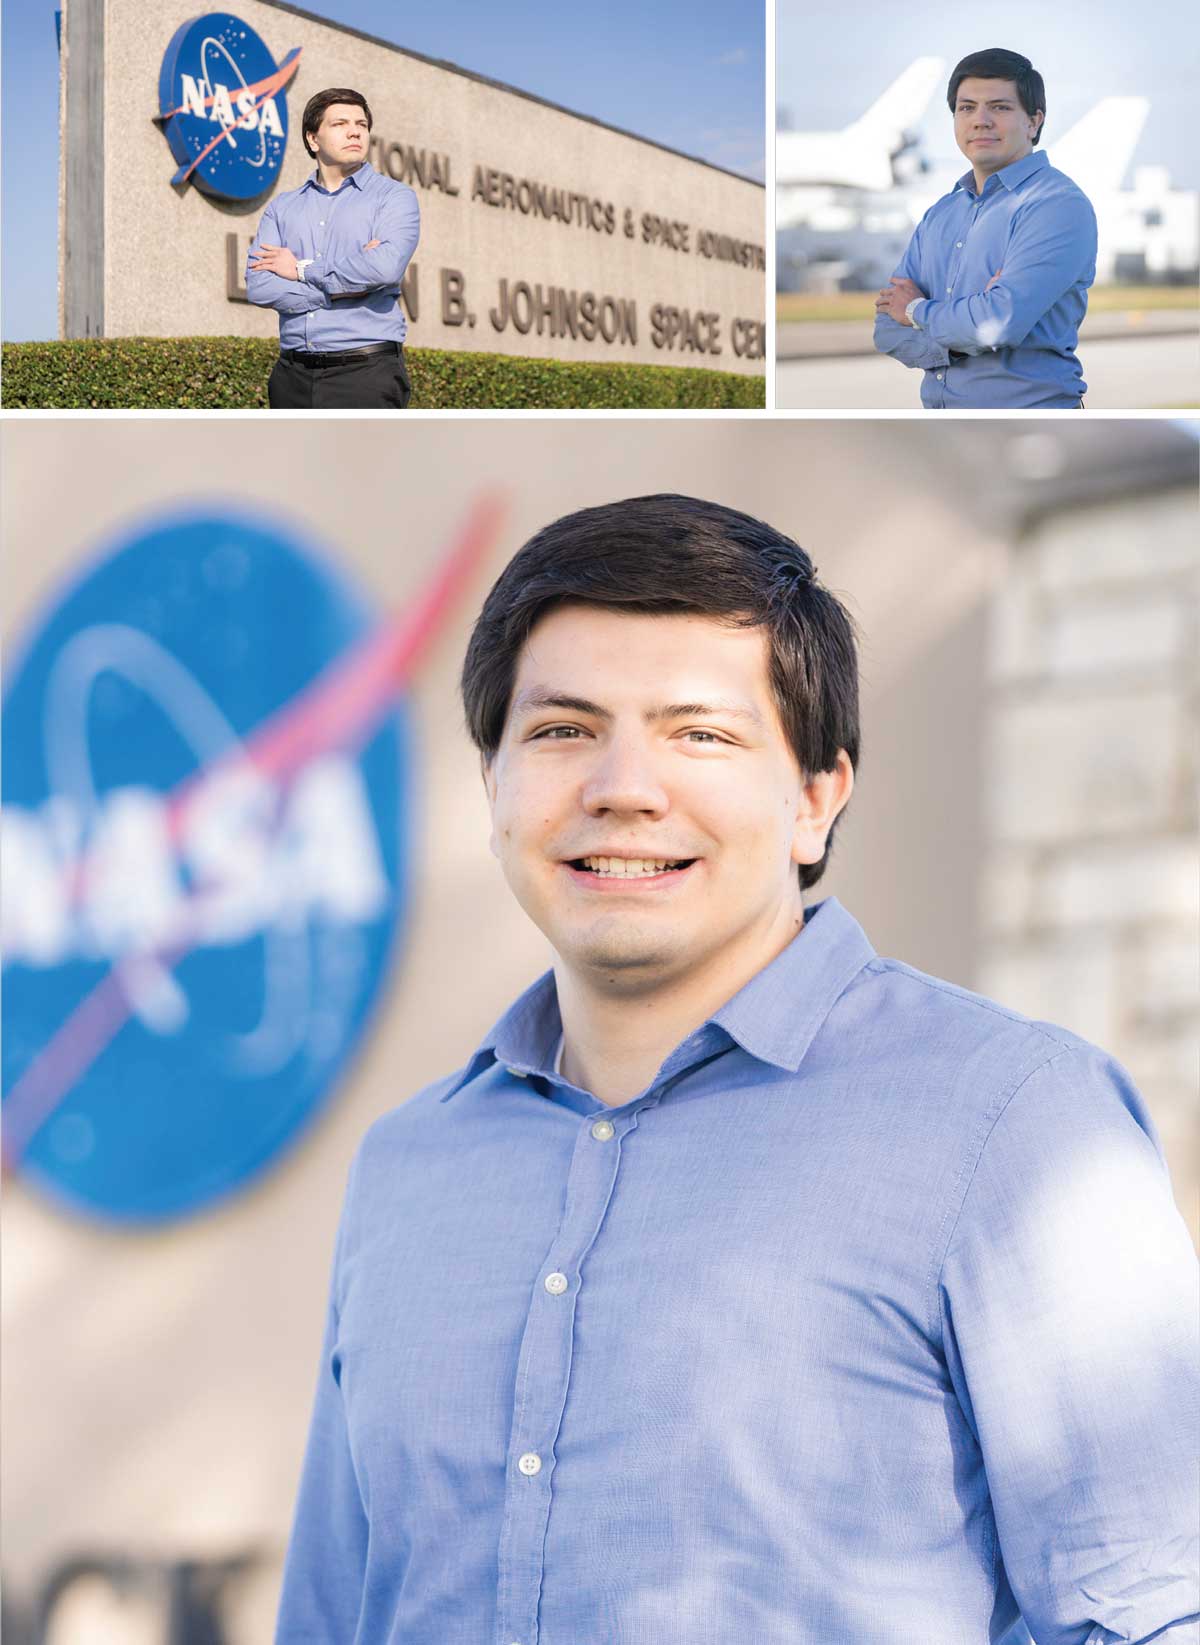 Walter Rodriguez at NASA Johnson Space Center